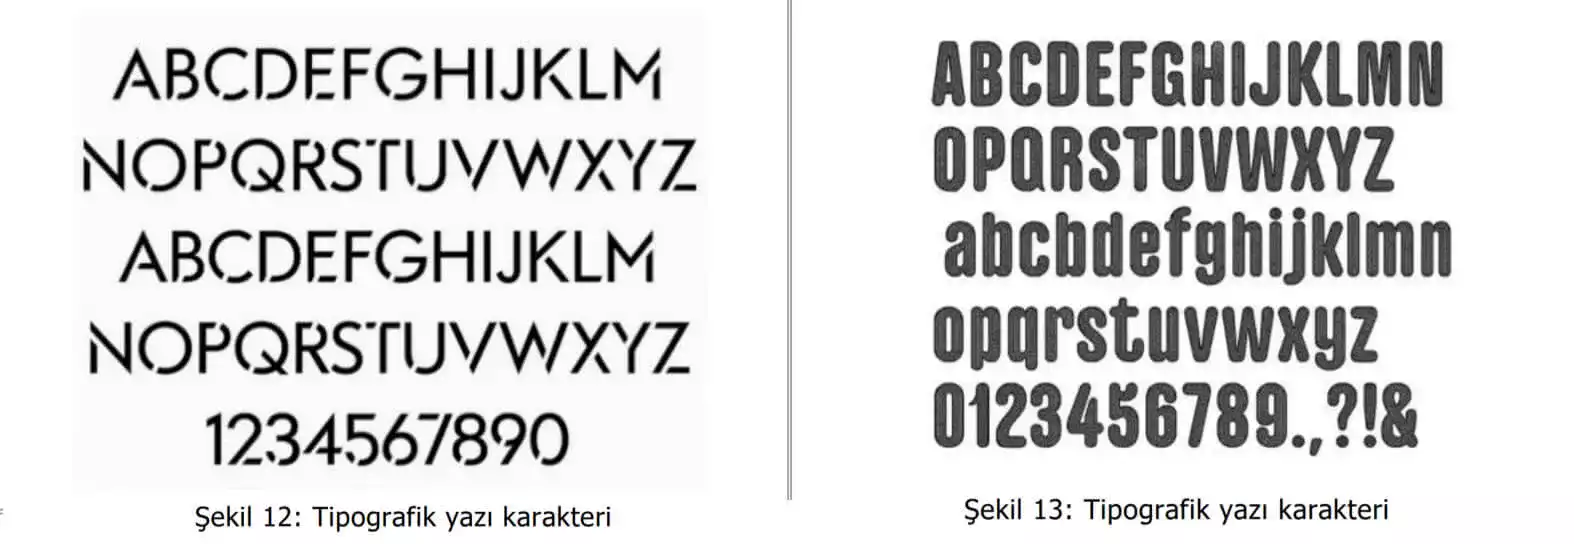 tipografik yazı karakter örnekleri-İzmir Web Tasarım